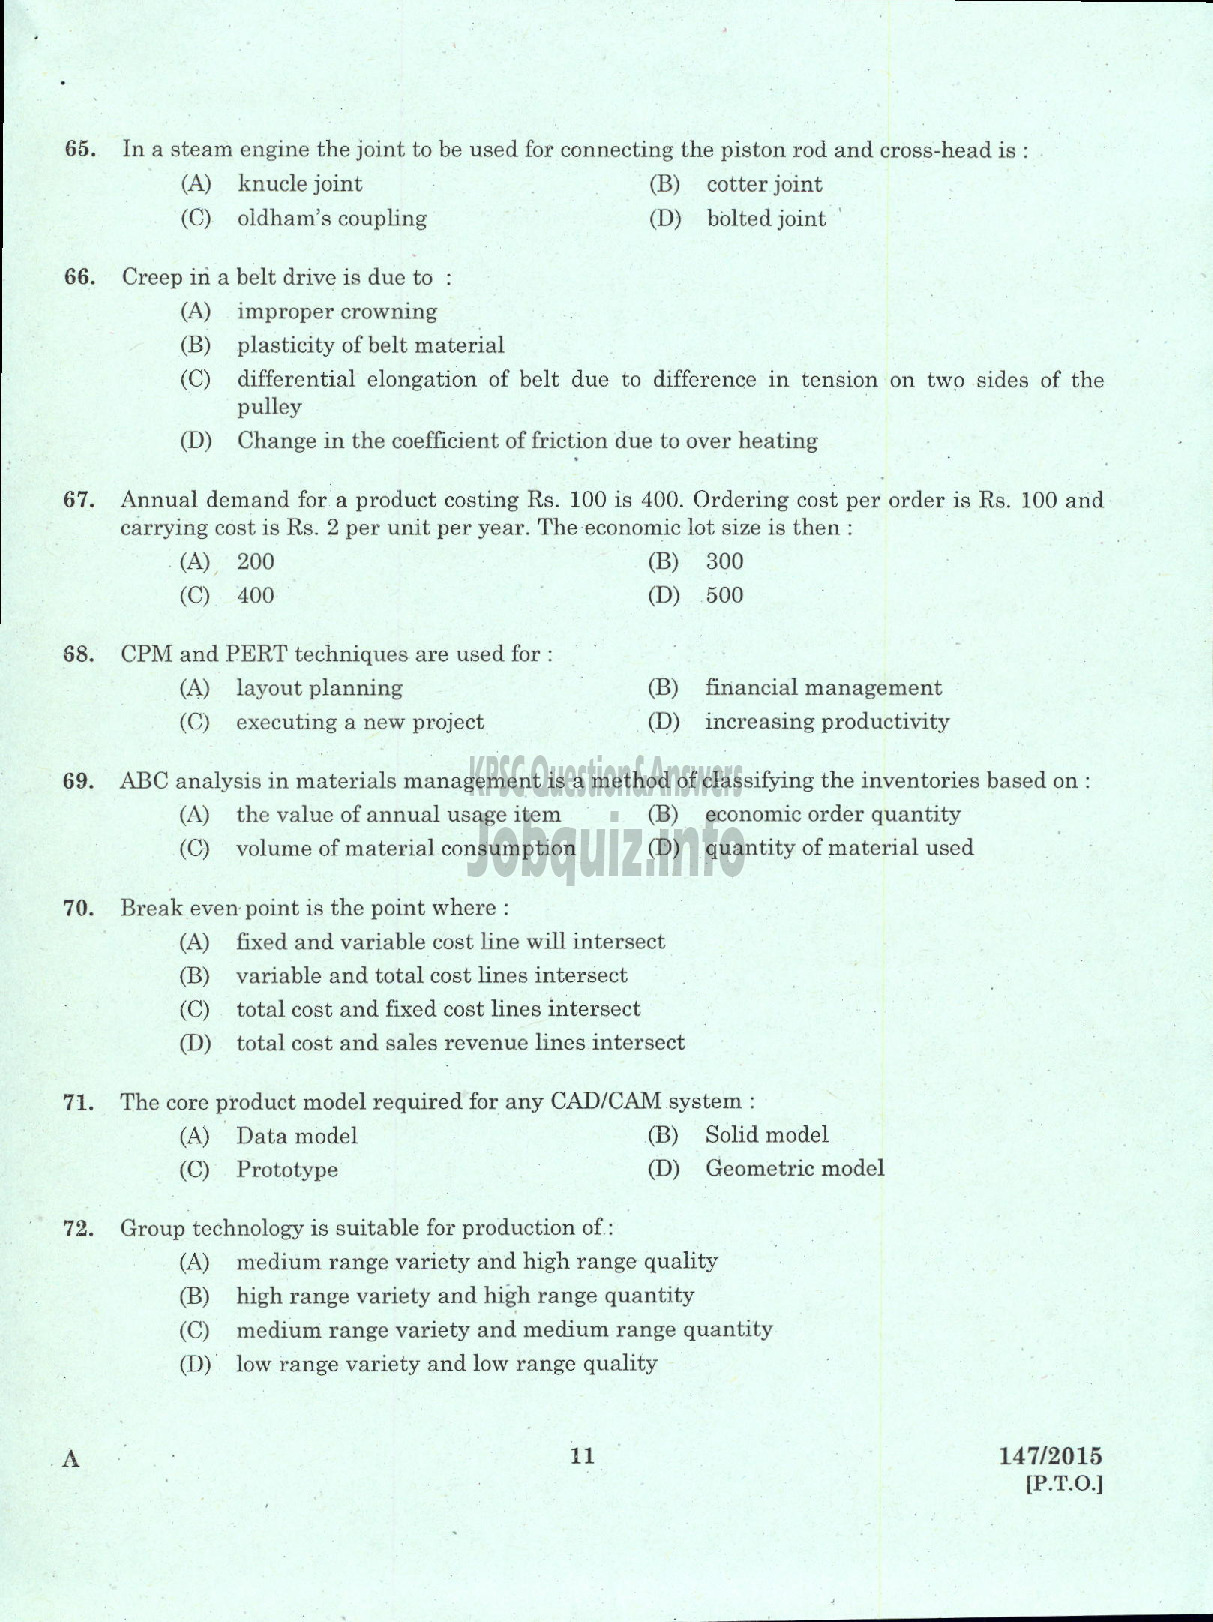 Kerala PSC Question Paper - ASST ENGINEER MECHANICAL TTP LTD / ASST ENGINEER MECHANICAL SFC OF KERALA LTD-9